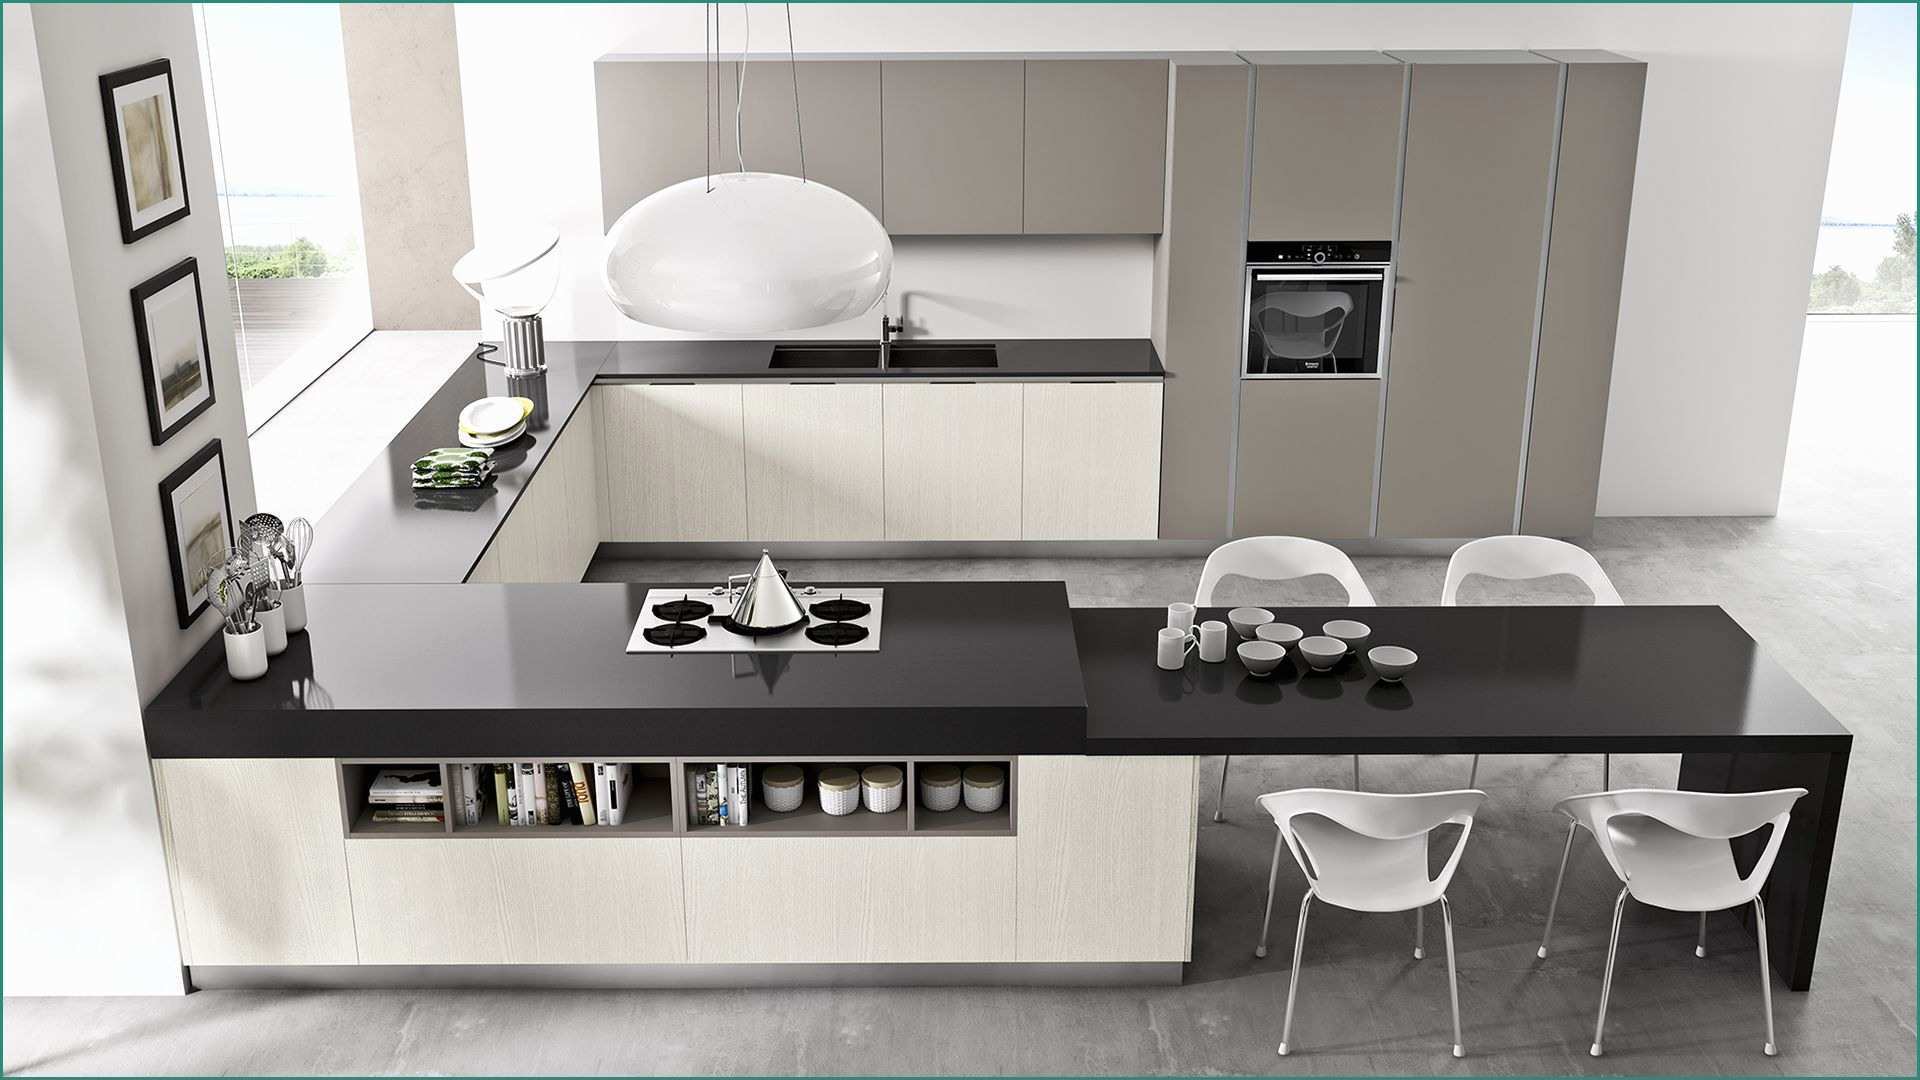 Colonna Dispensa Cucina E Cucina Moderna Con Ola Ad Angolo Day3a House